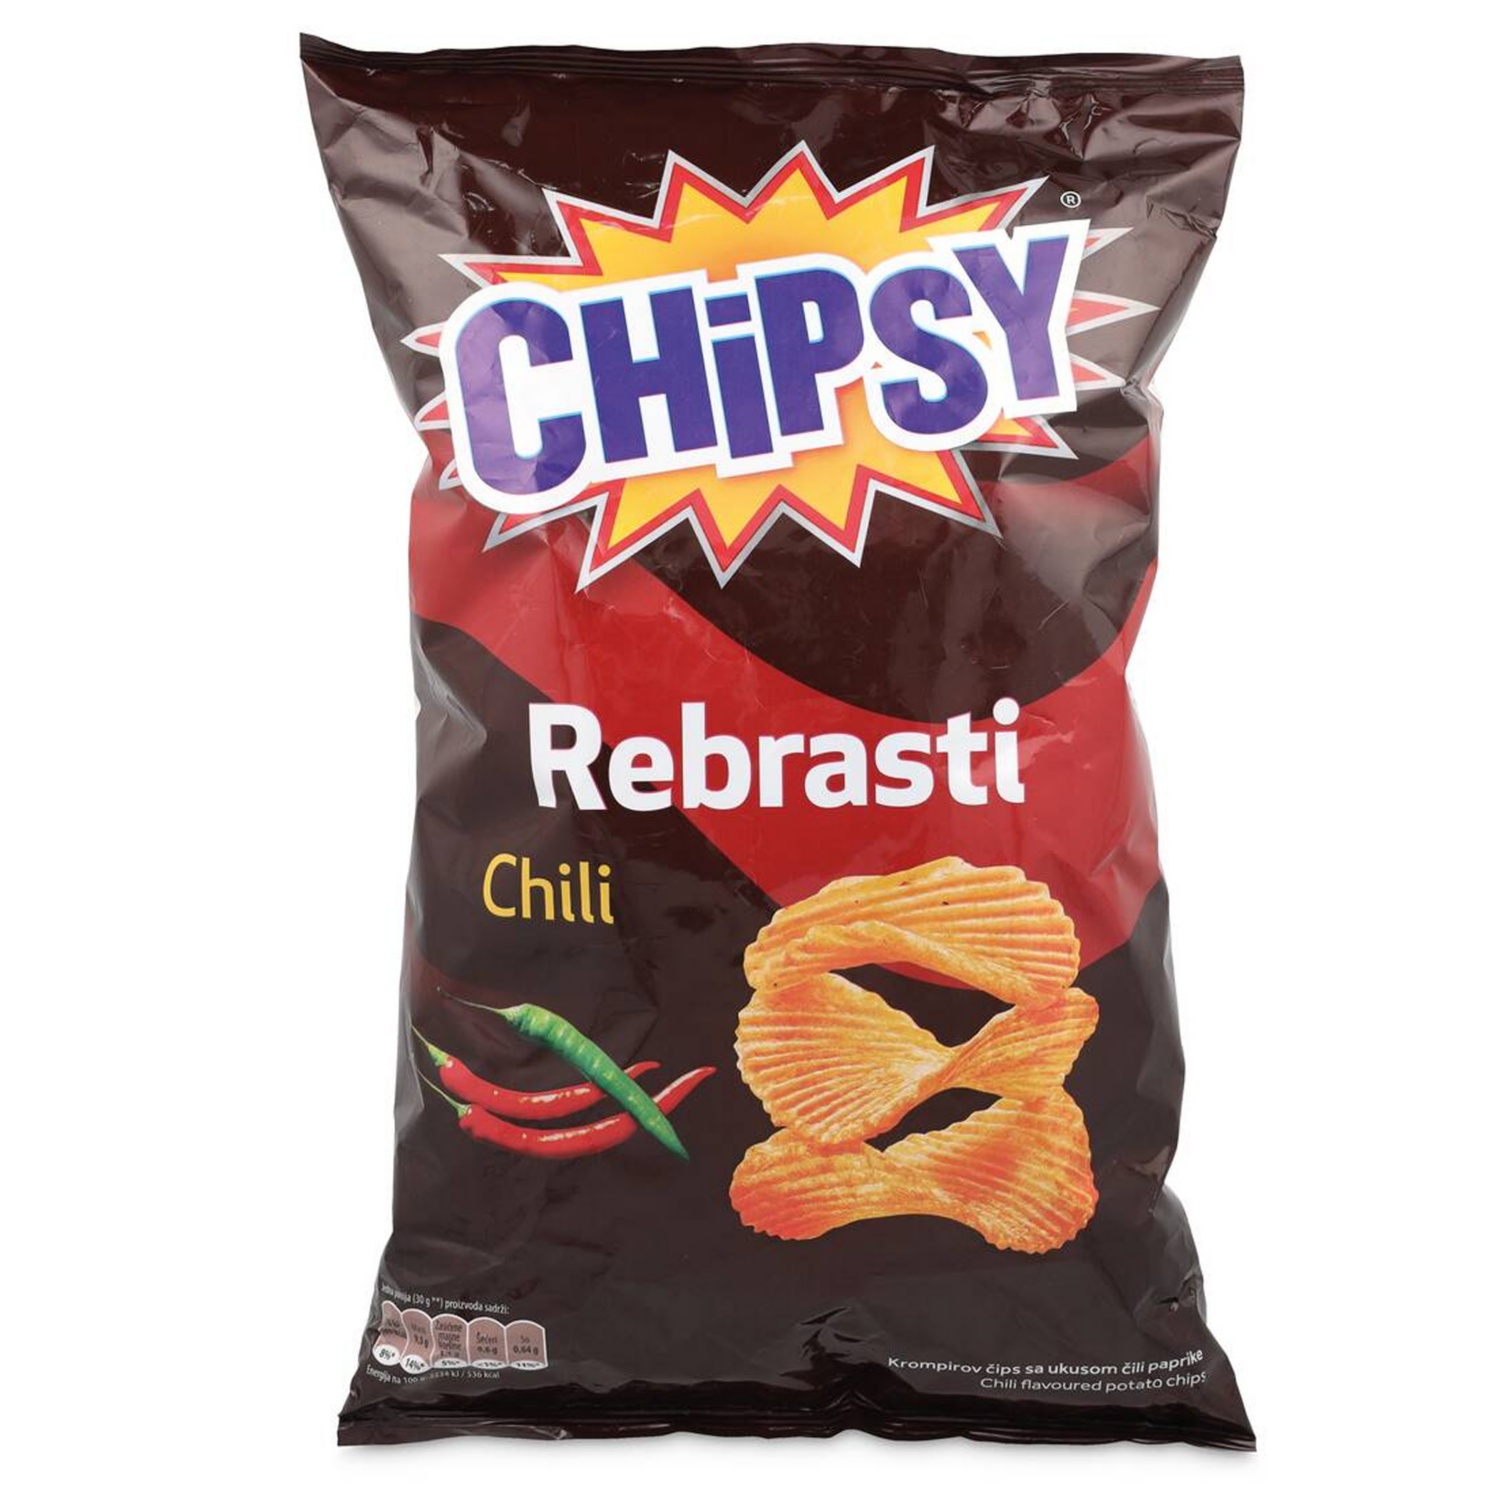 Chipsy čips, čili